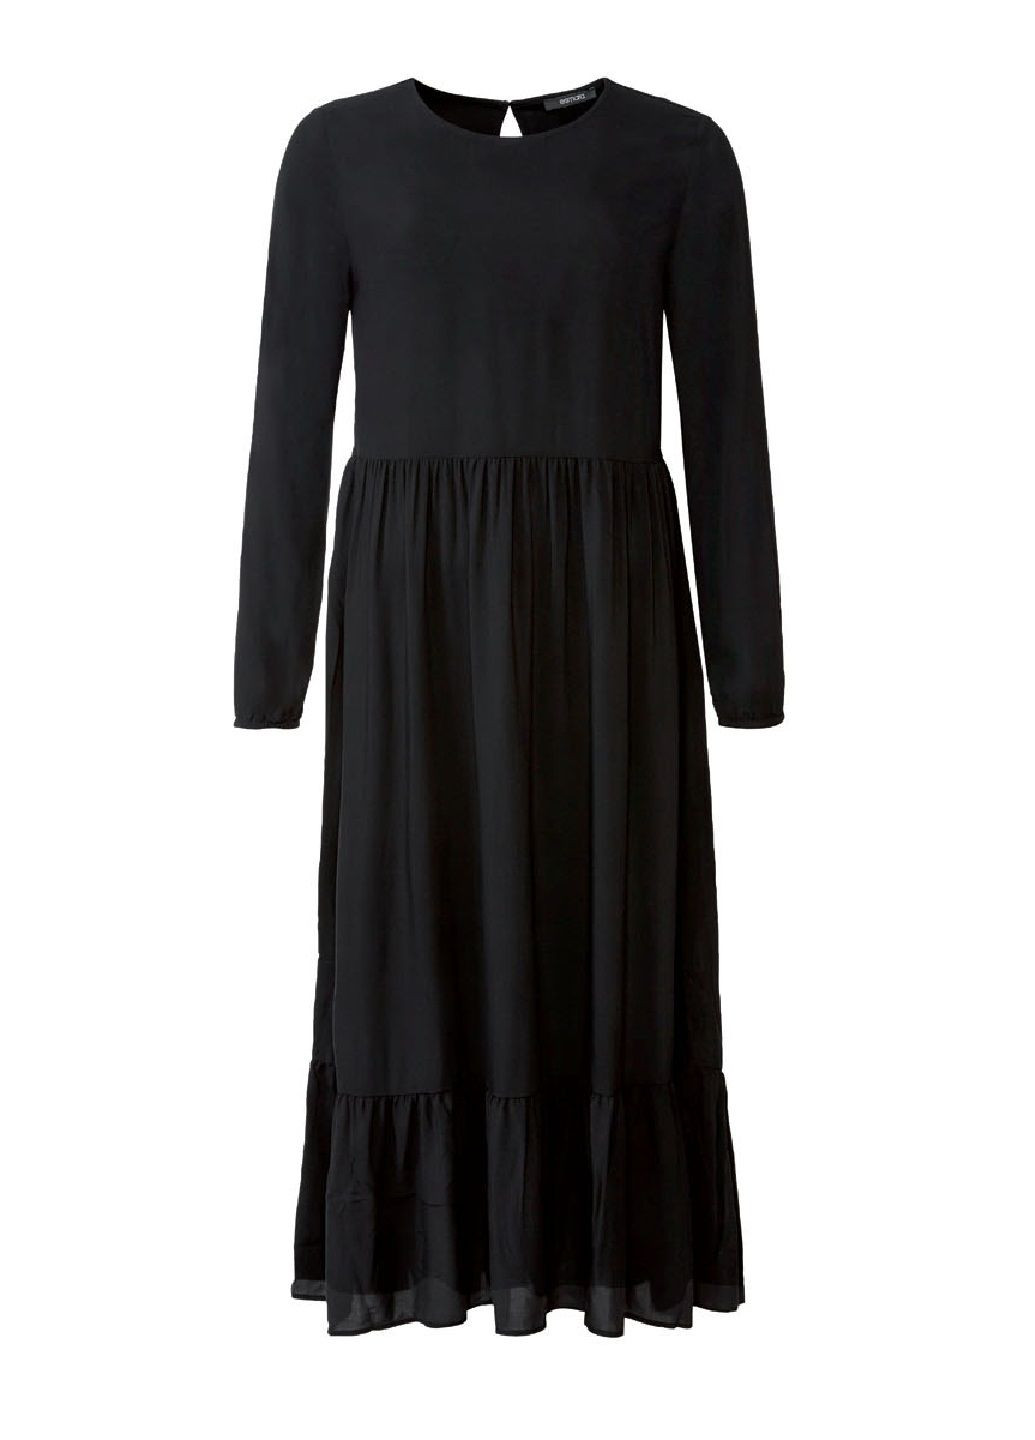 Черное деловое платье а-силуэт Esmara однотонное